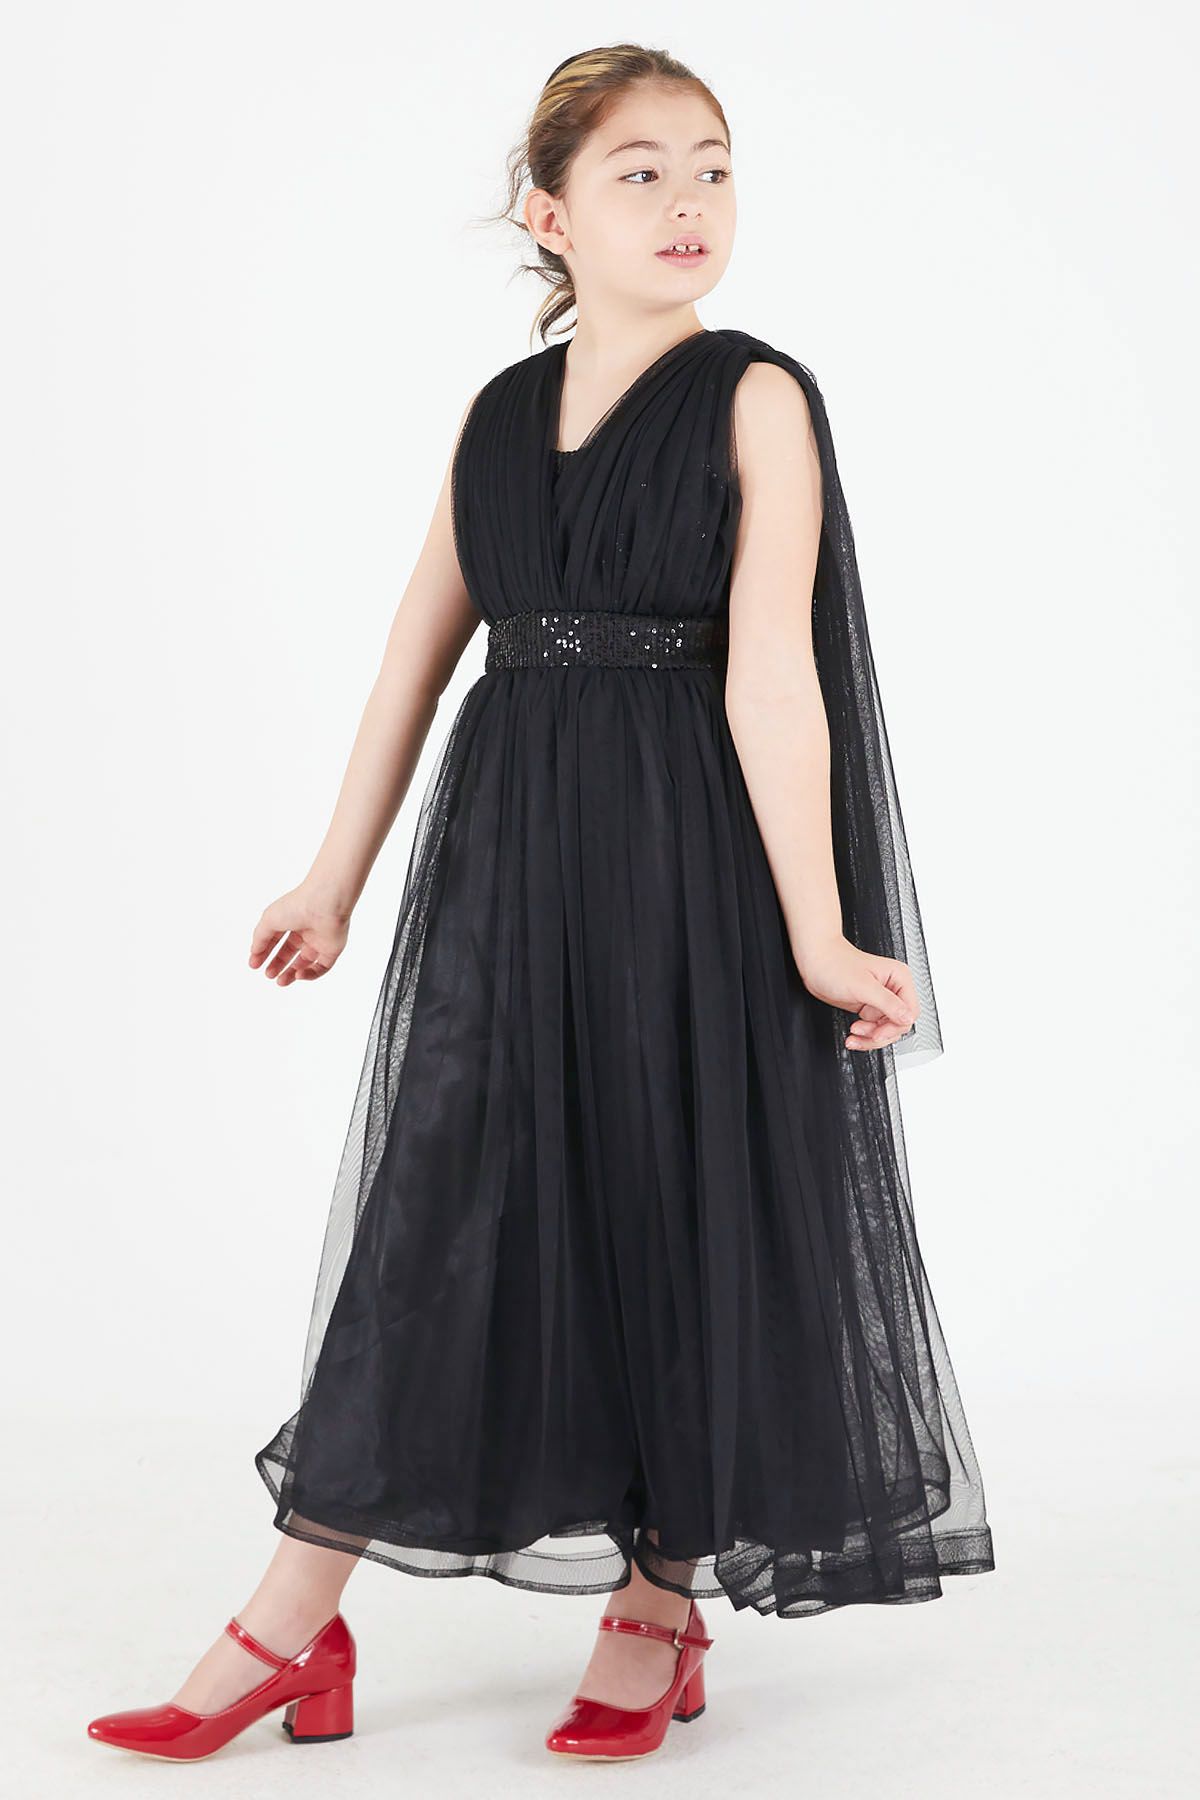 Cansın Mini Siyah Pelerinli Tüllü Kız Abiye Elbise 15681